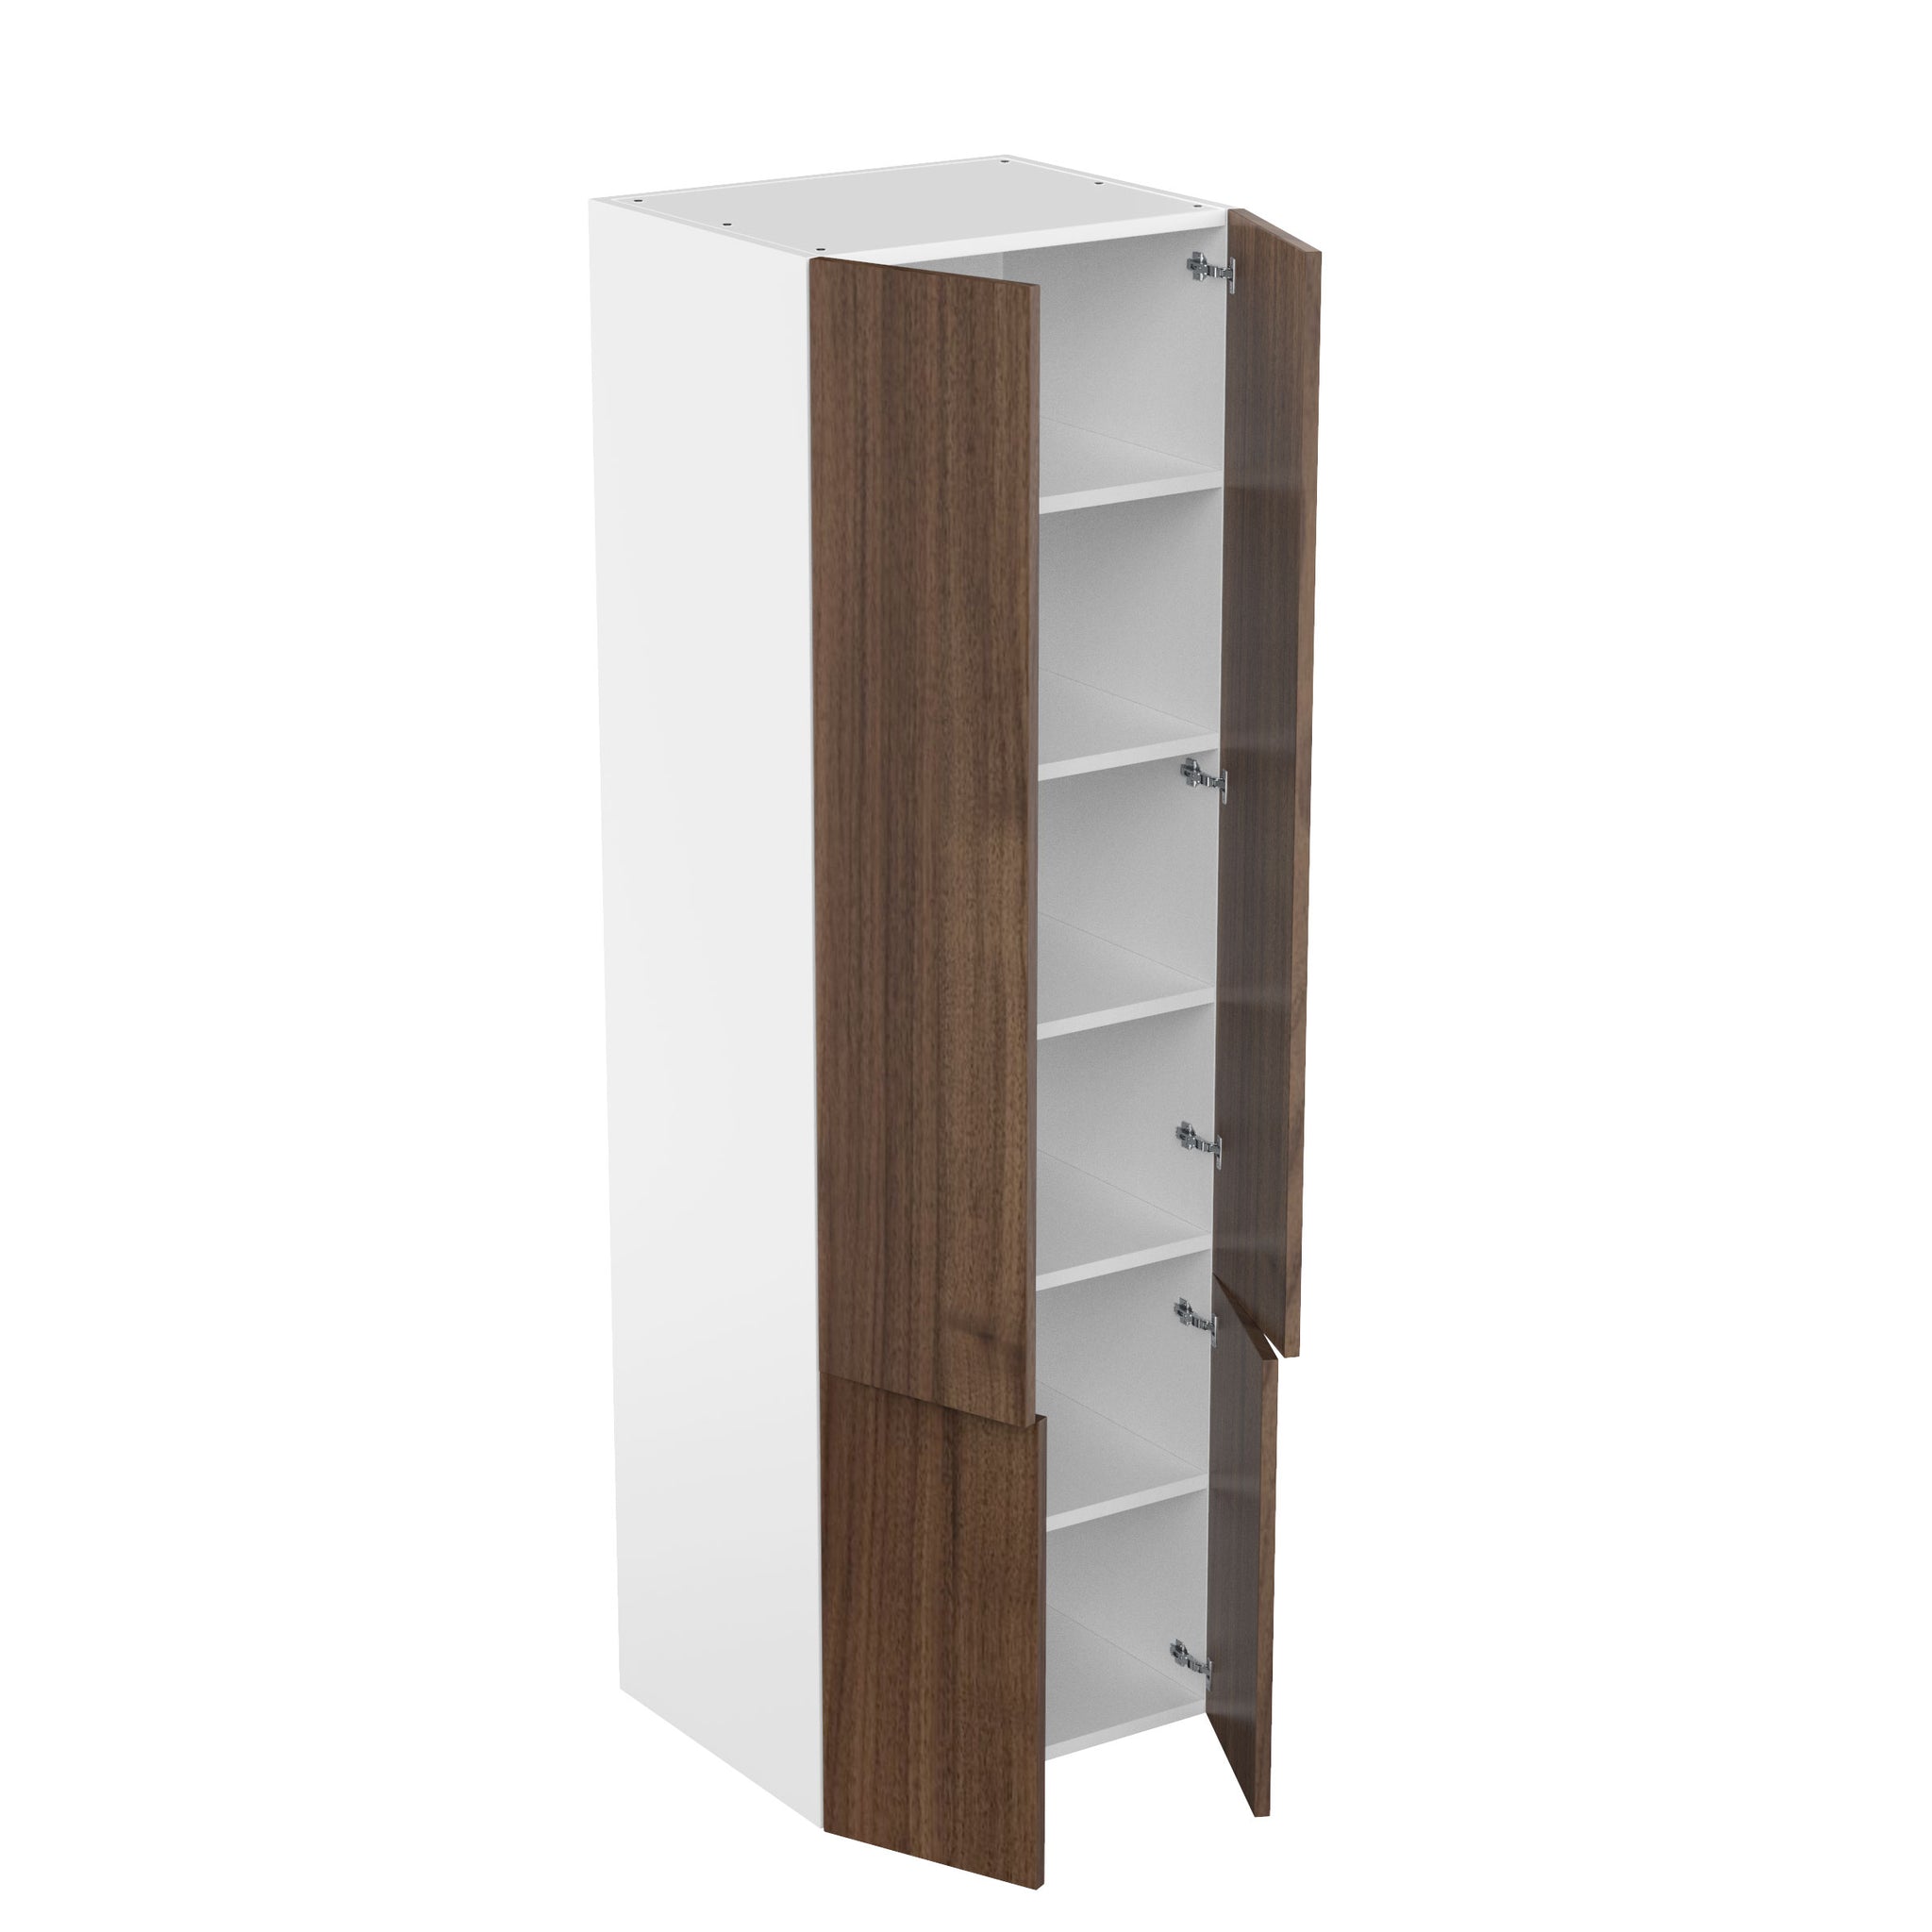 RTA - Walnut - Double Door Tall Cabinets | 30"W x 96"H x 24"D